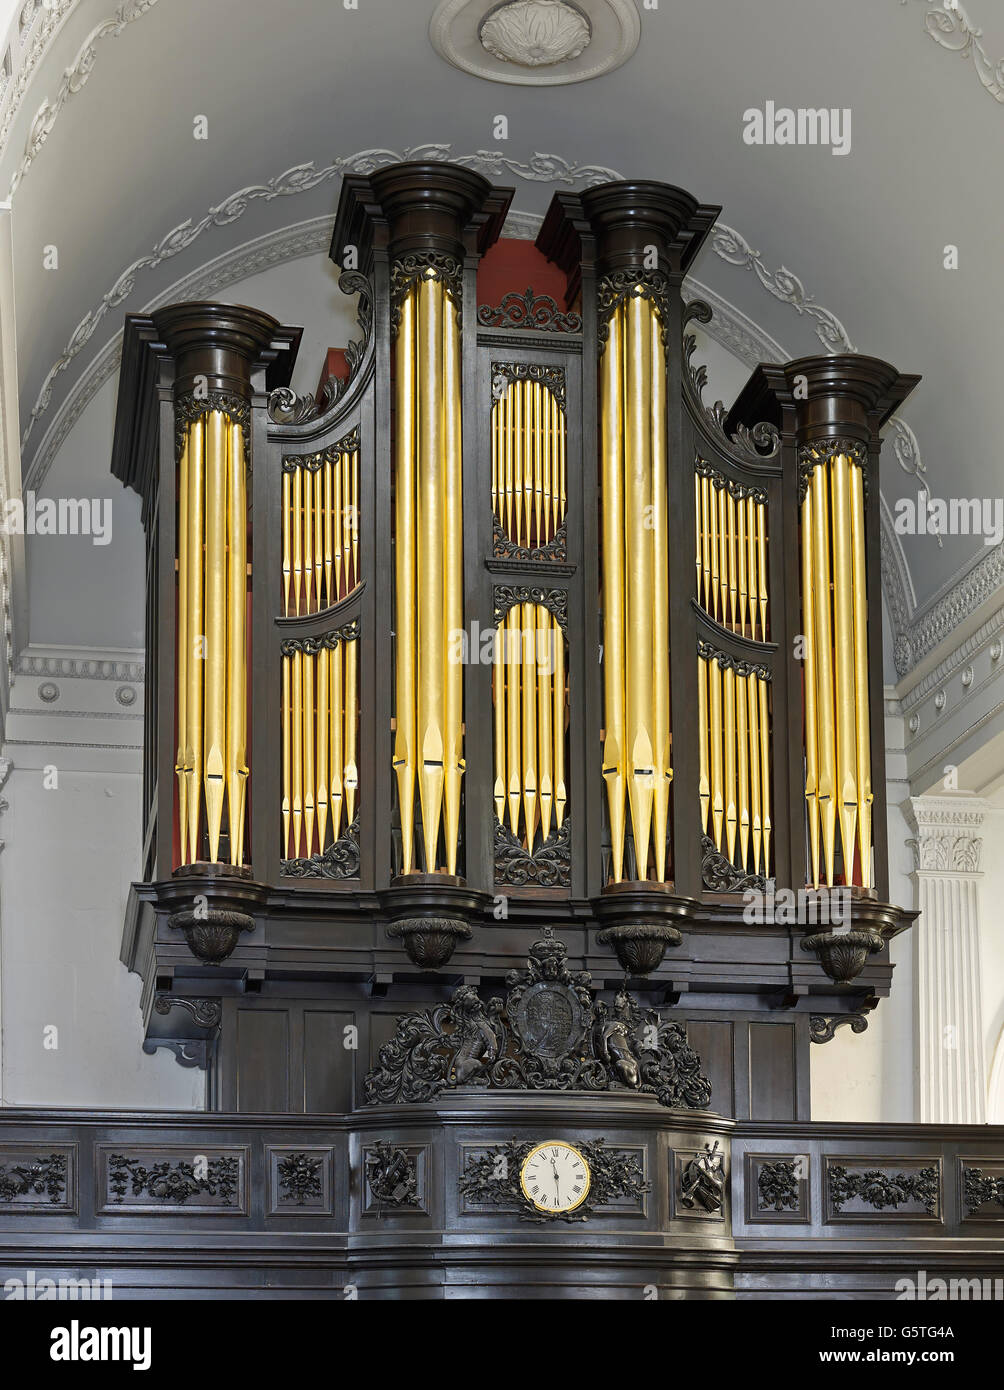 En la Colina de Santa María, iglesia en la ciudad de Londres, el órgano Foto de stock